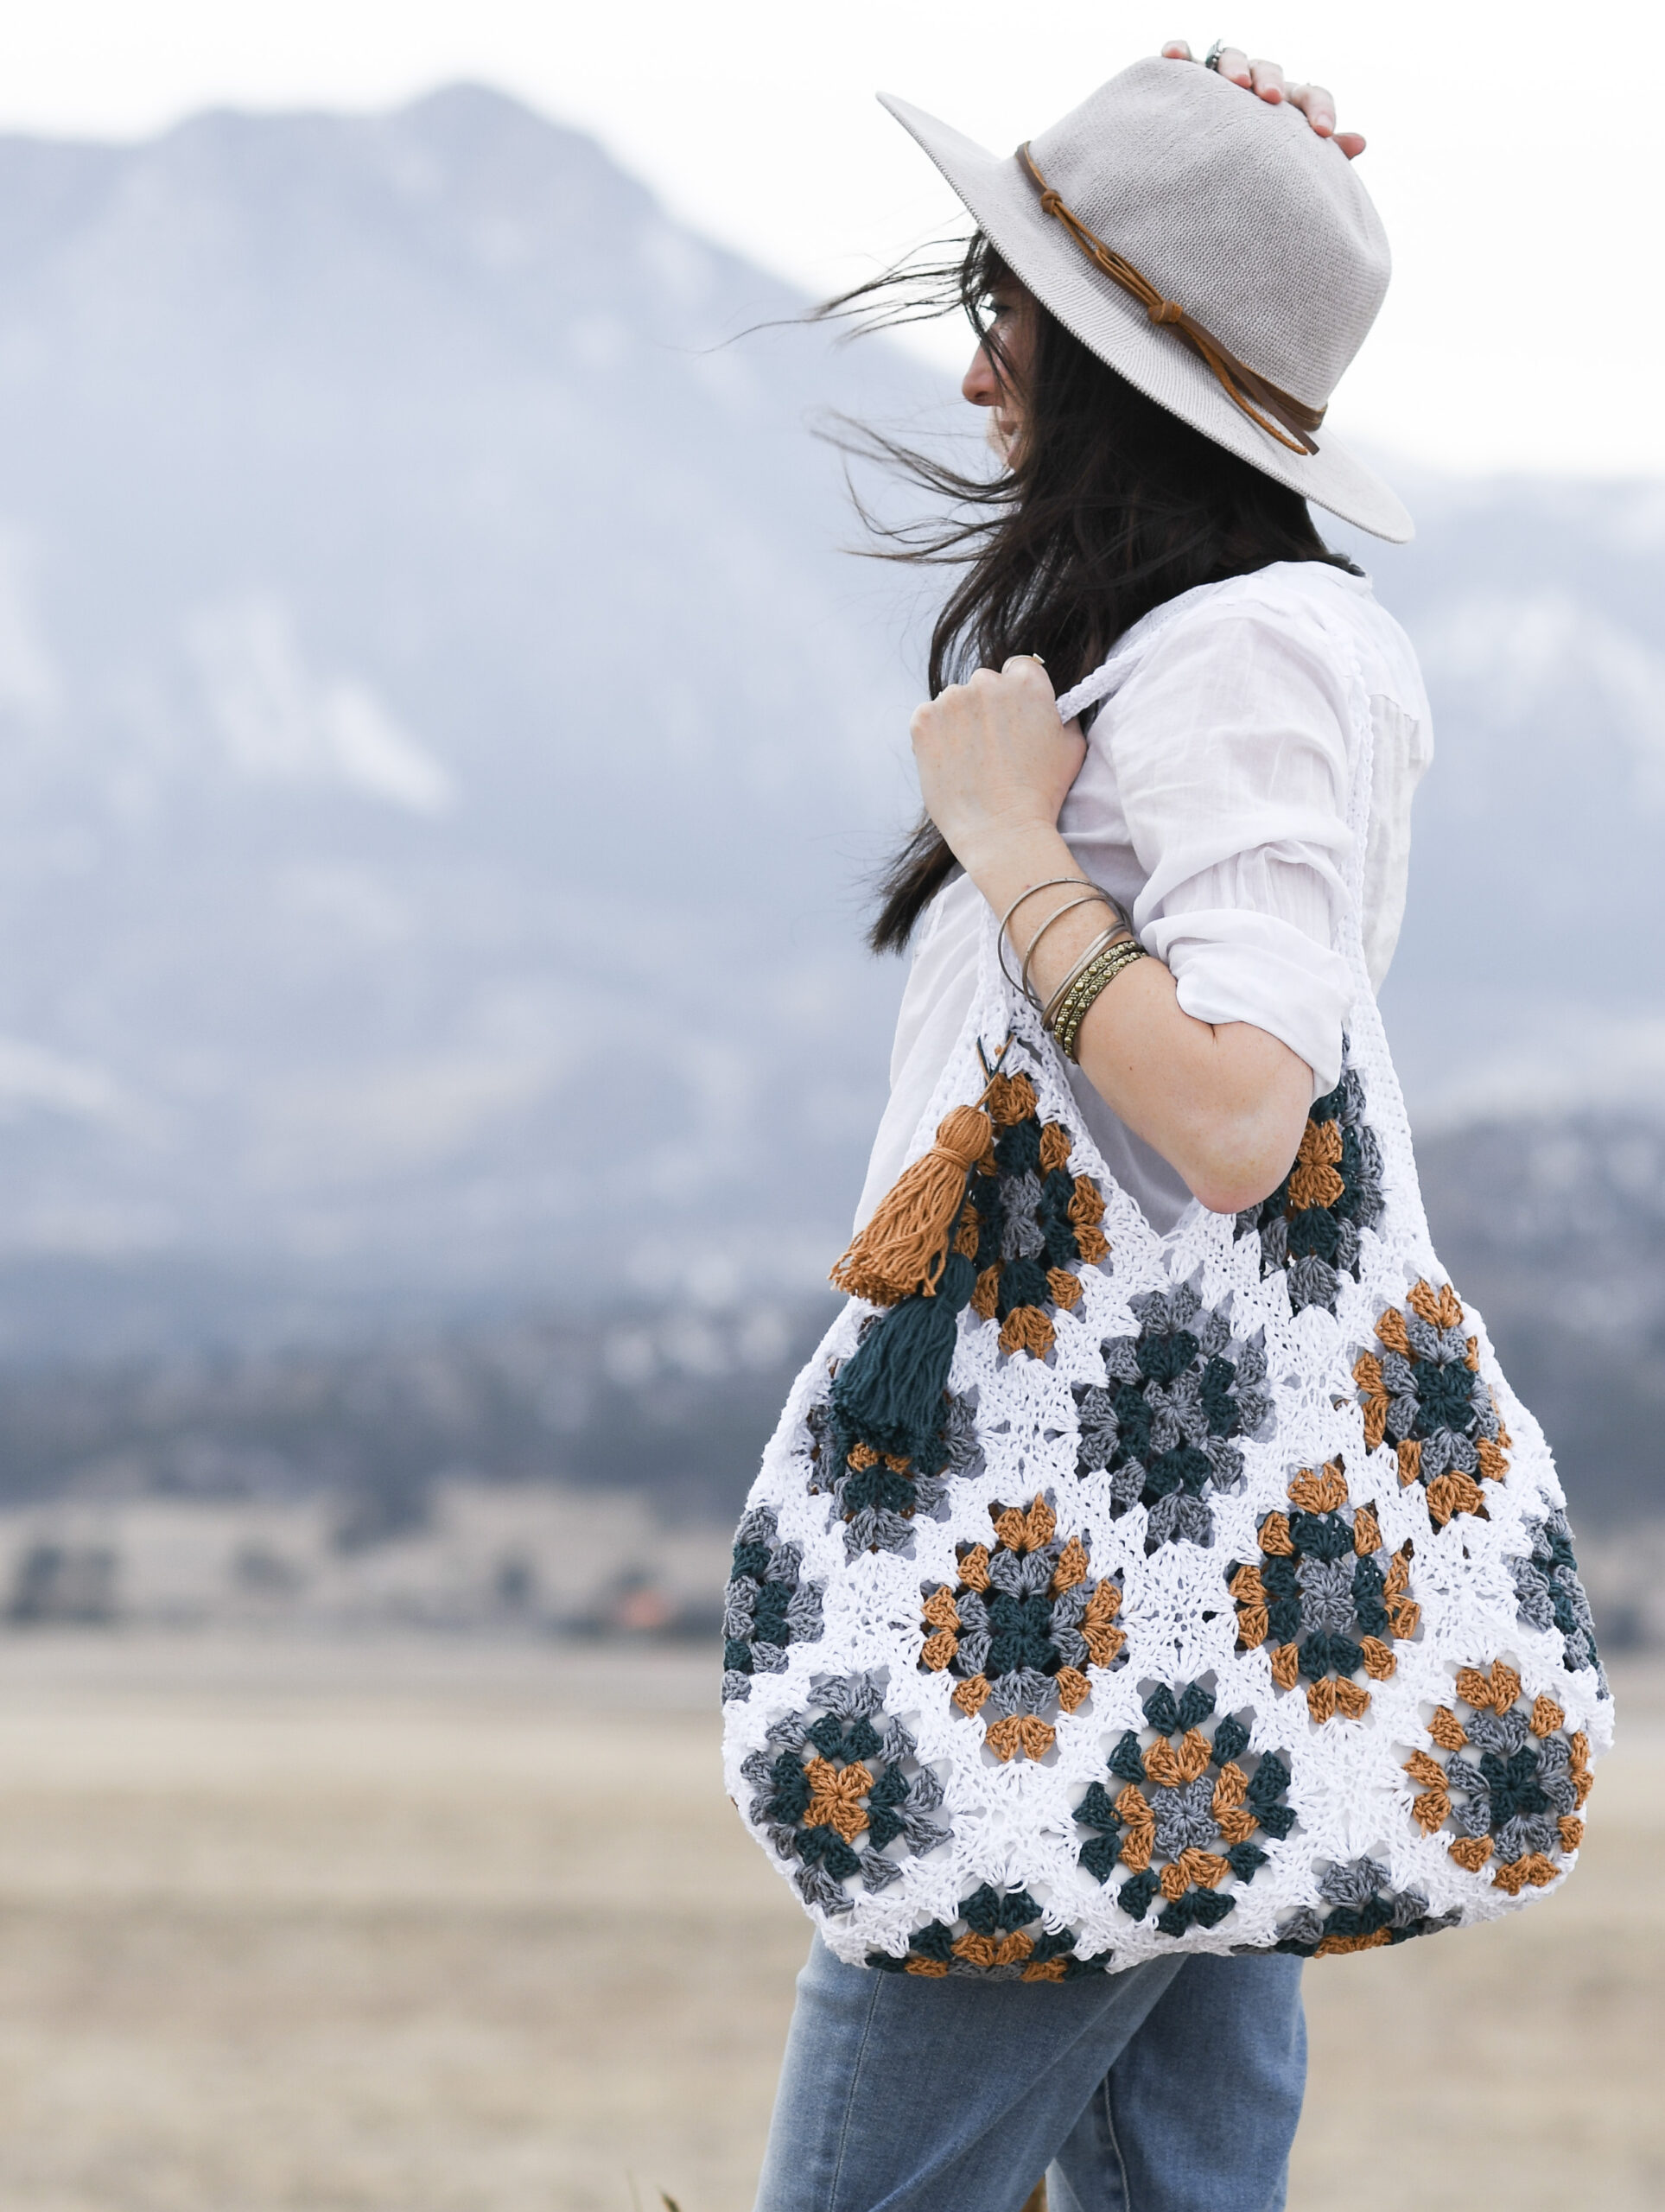 Granny Square Bag Crochet Afghan Bag Crochet Patchwork Bag 